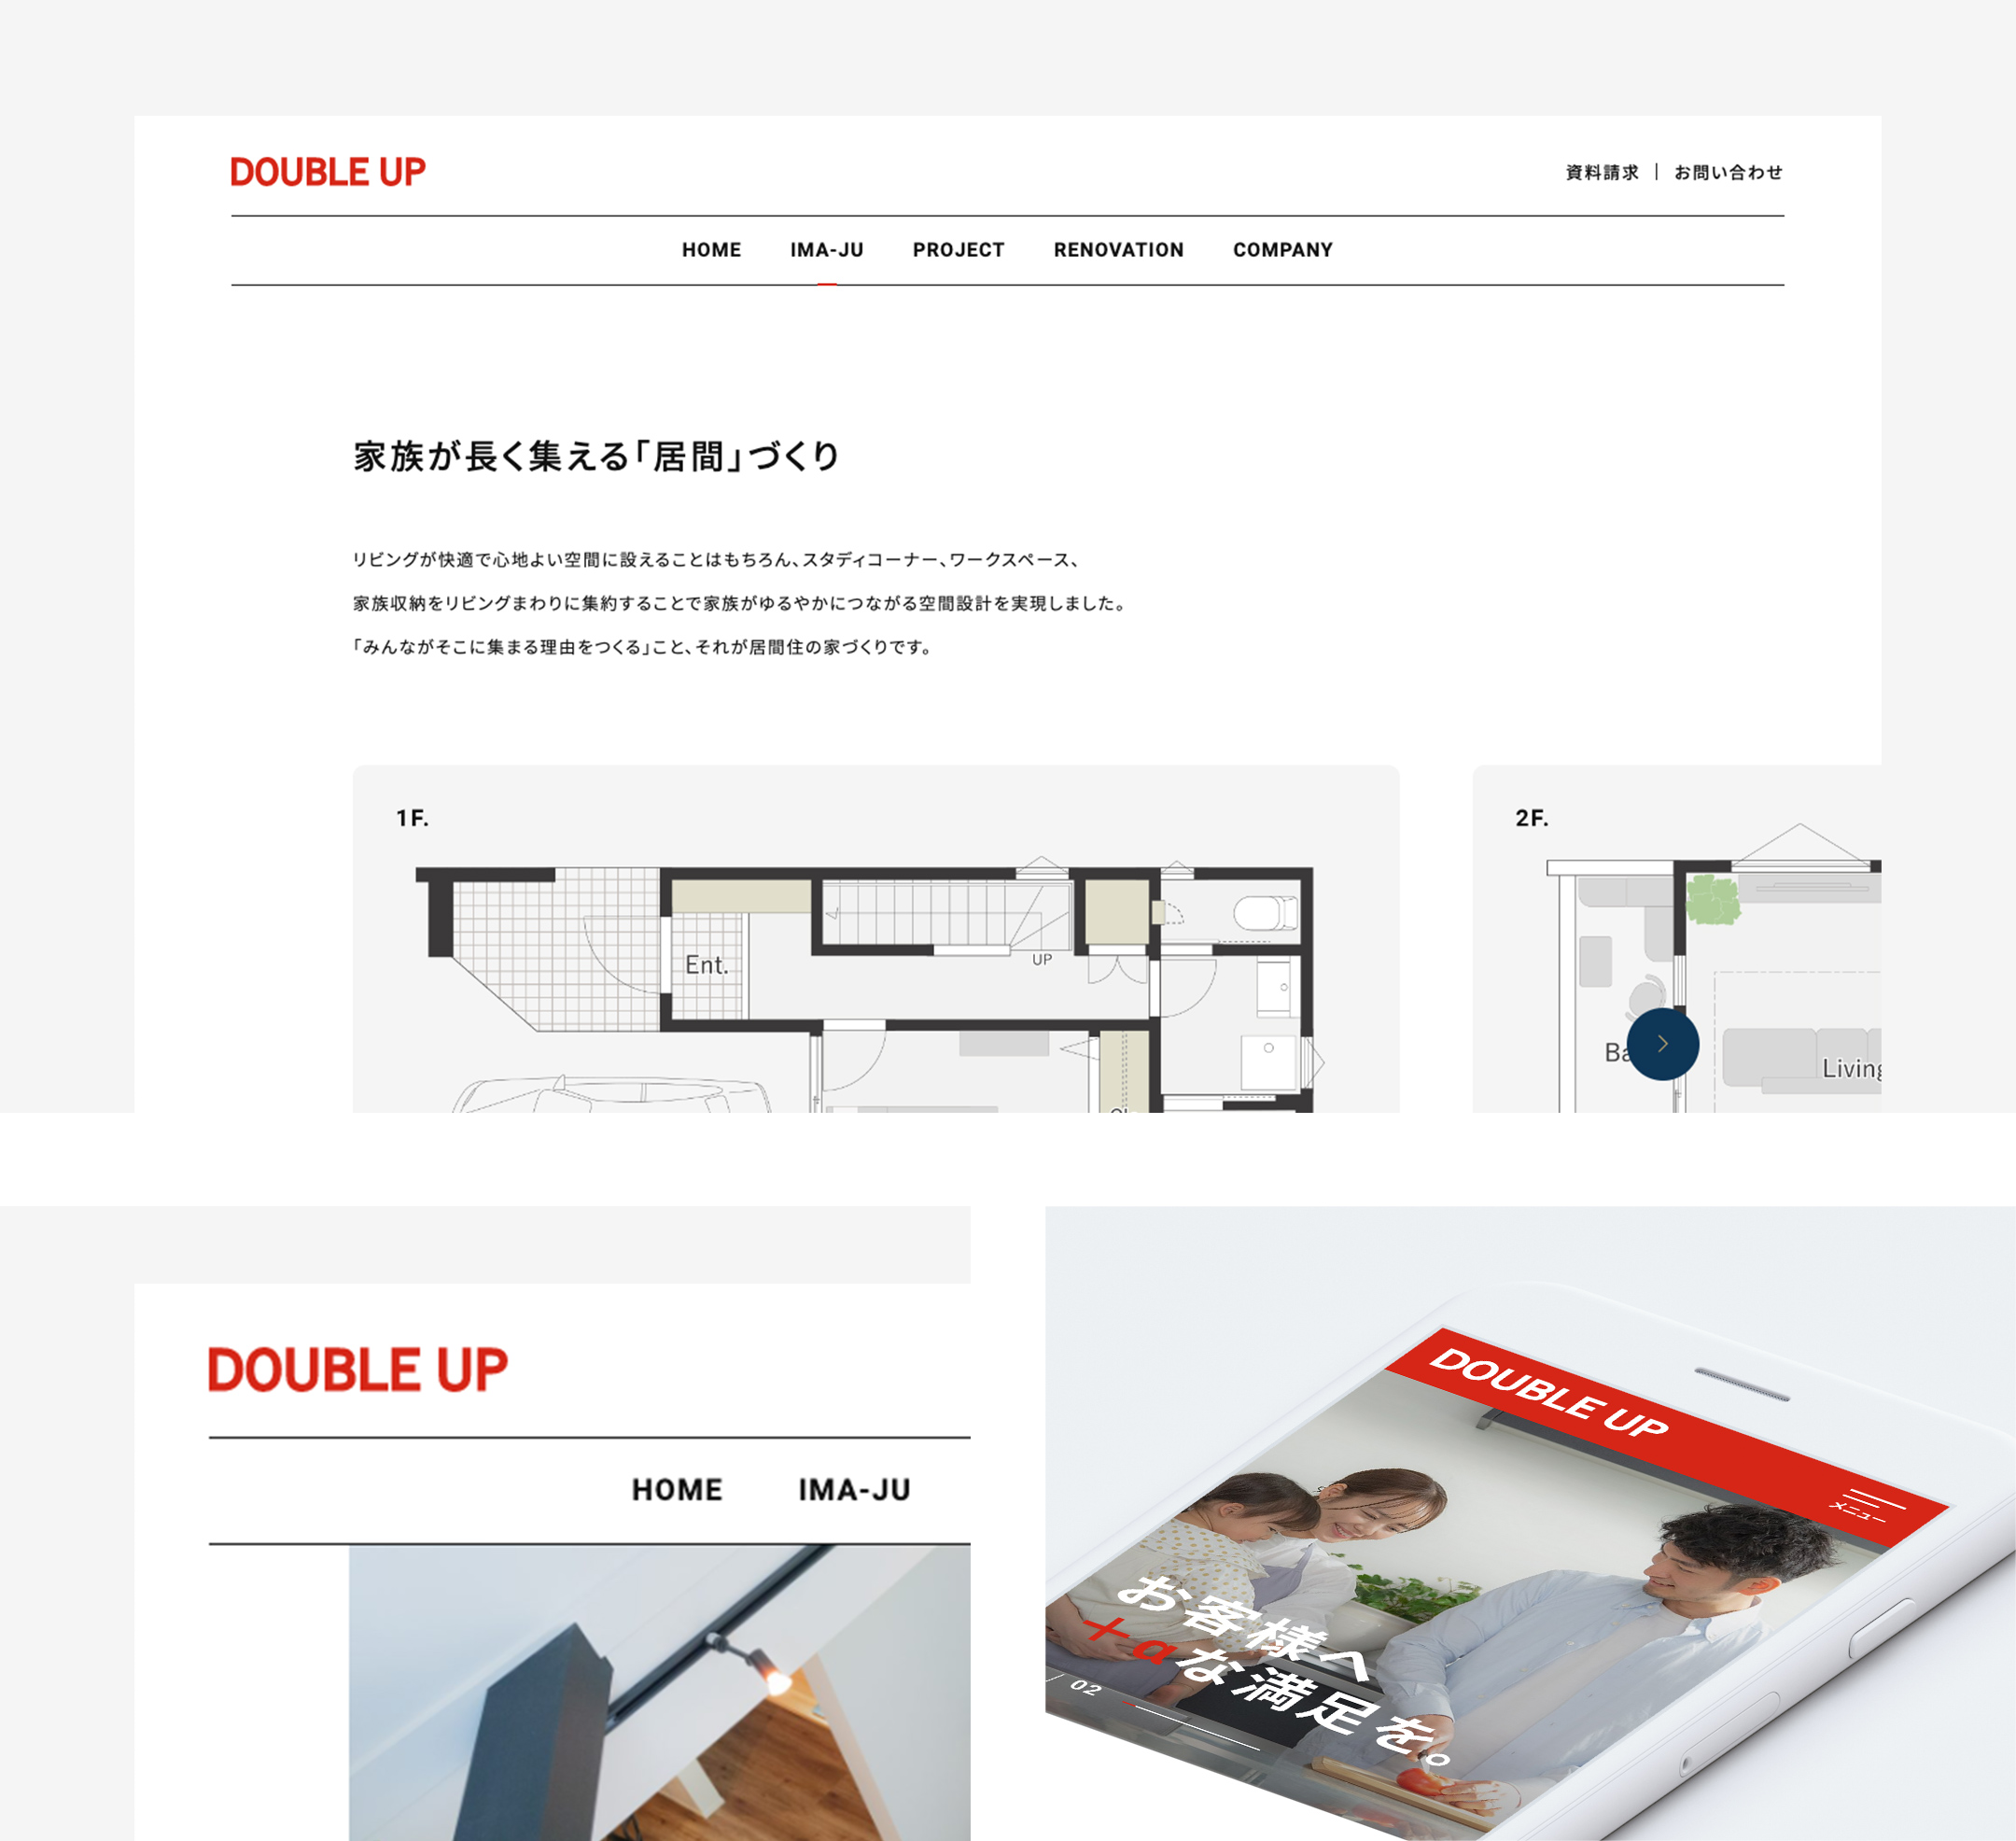 株式会社ダブルアップ / DOUBLE UP Co., Ltd.